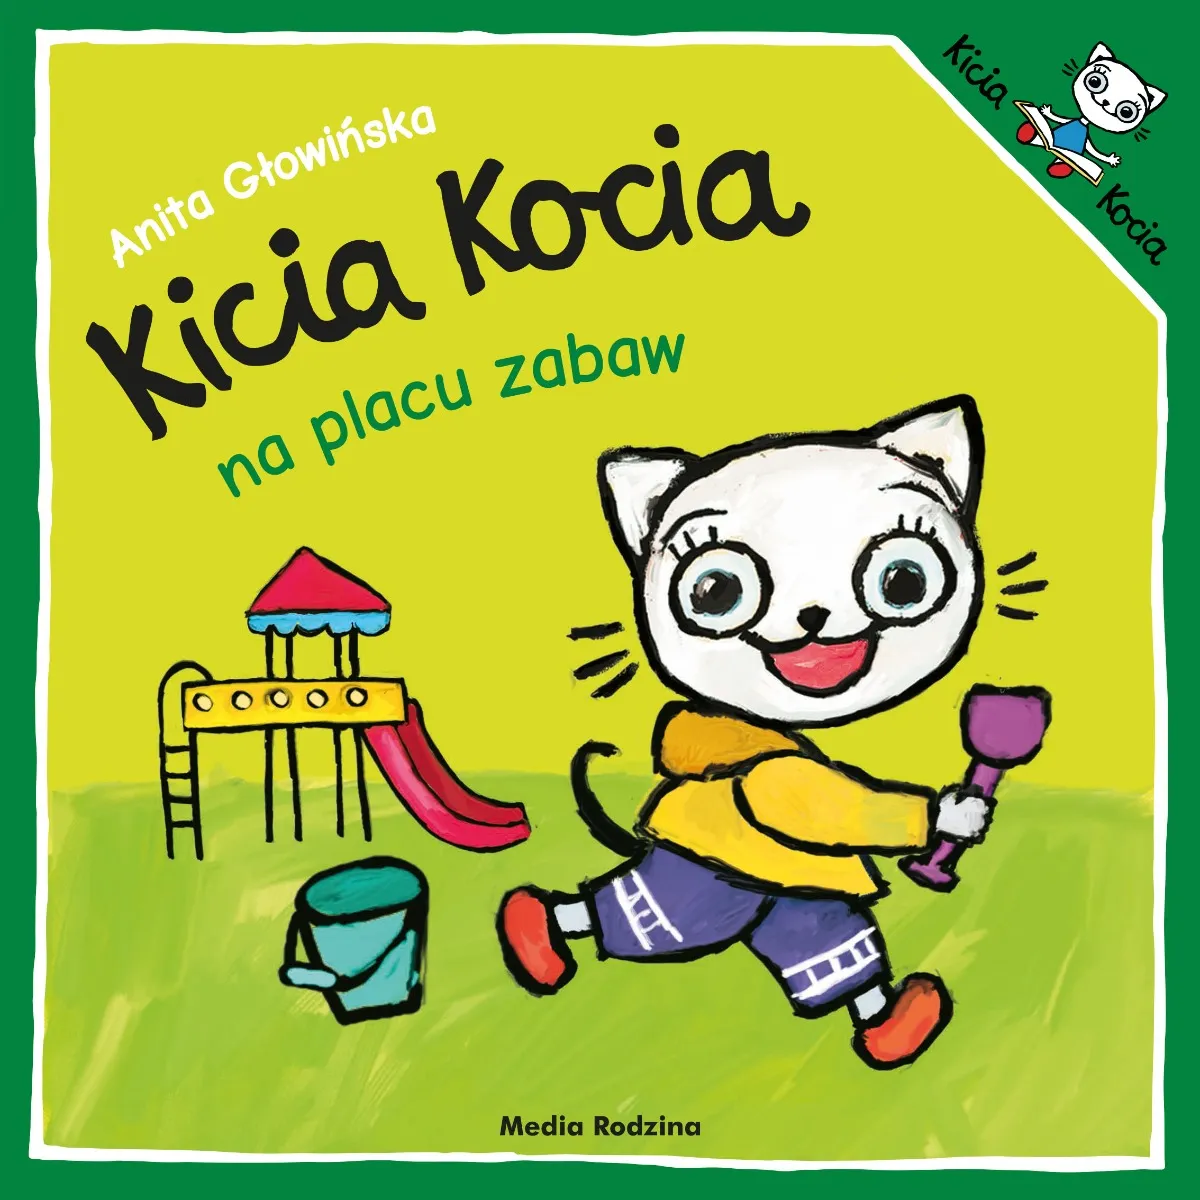 Kicia kocia na placu zabaw, Anita Głowińska